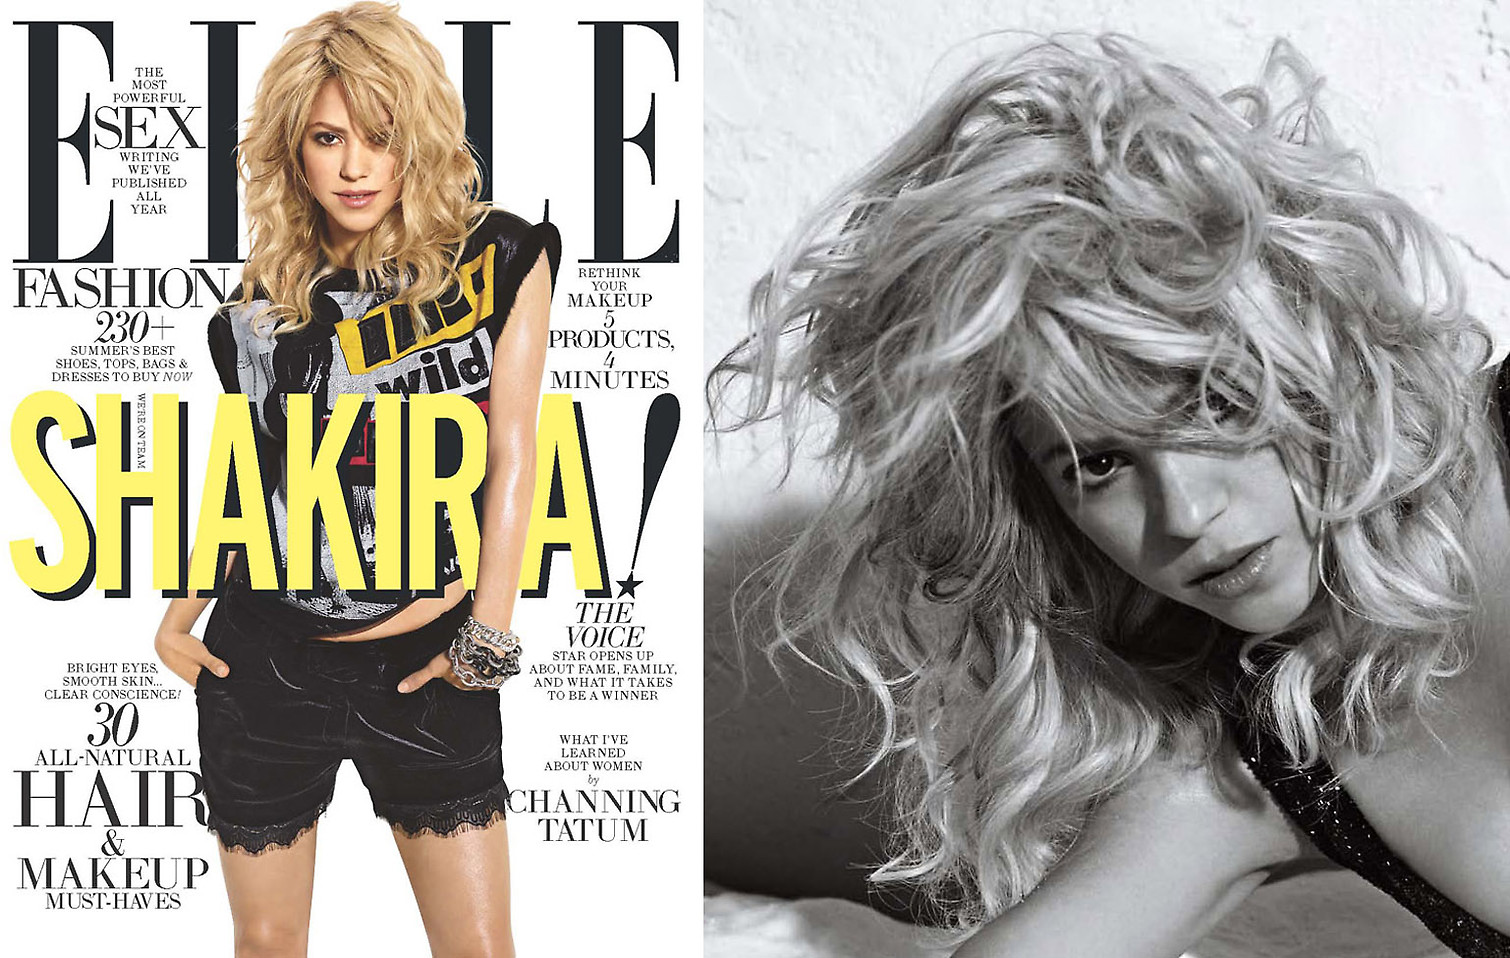 Shakira_double_elle-1.jpg_1510_975_0_90_1_50_50.jpg